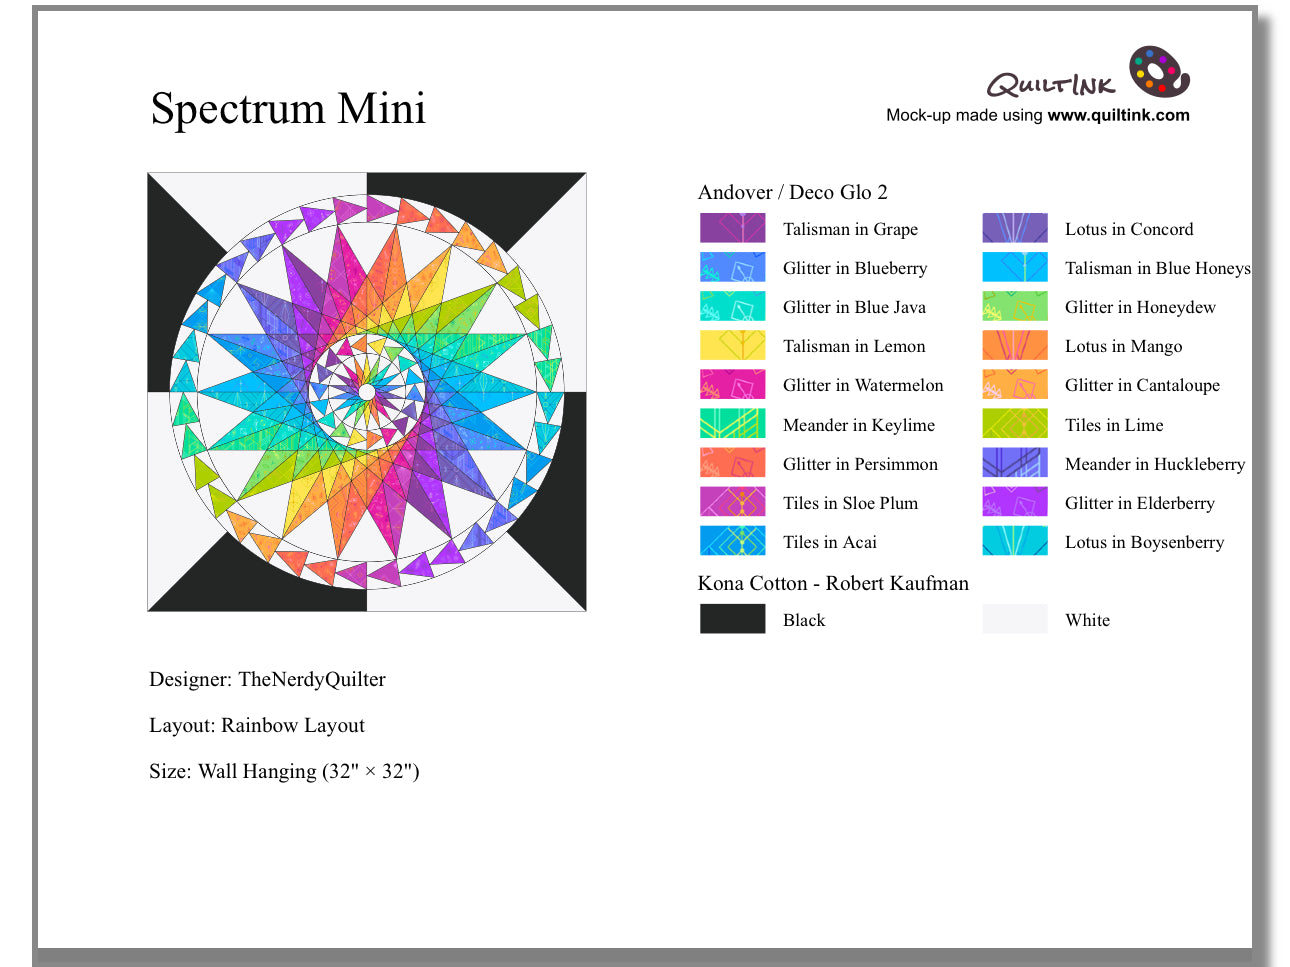 Spectrum Mini Quilt featuring Deco Glo2